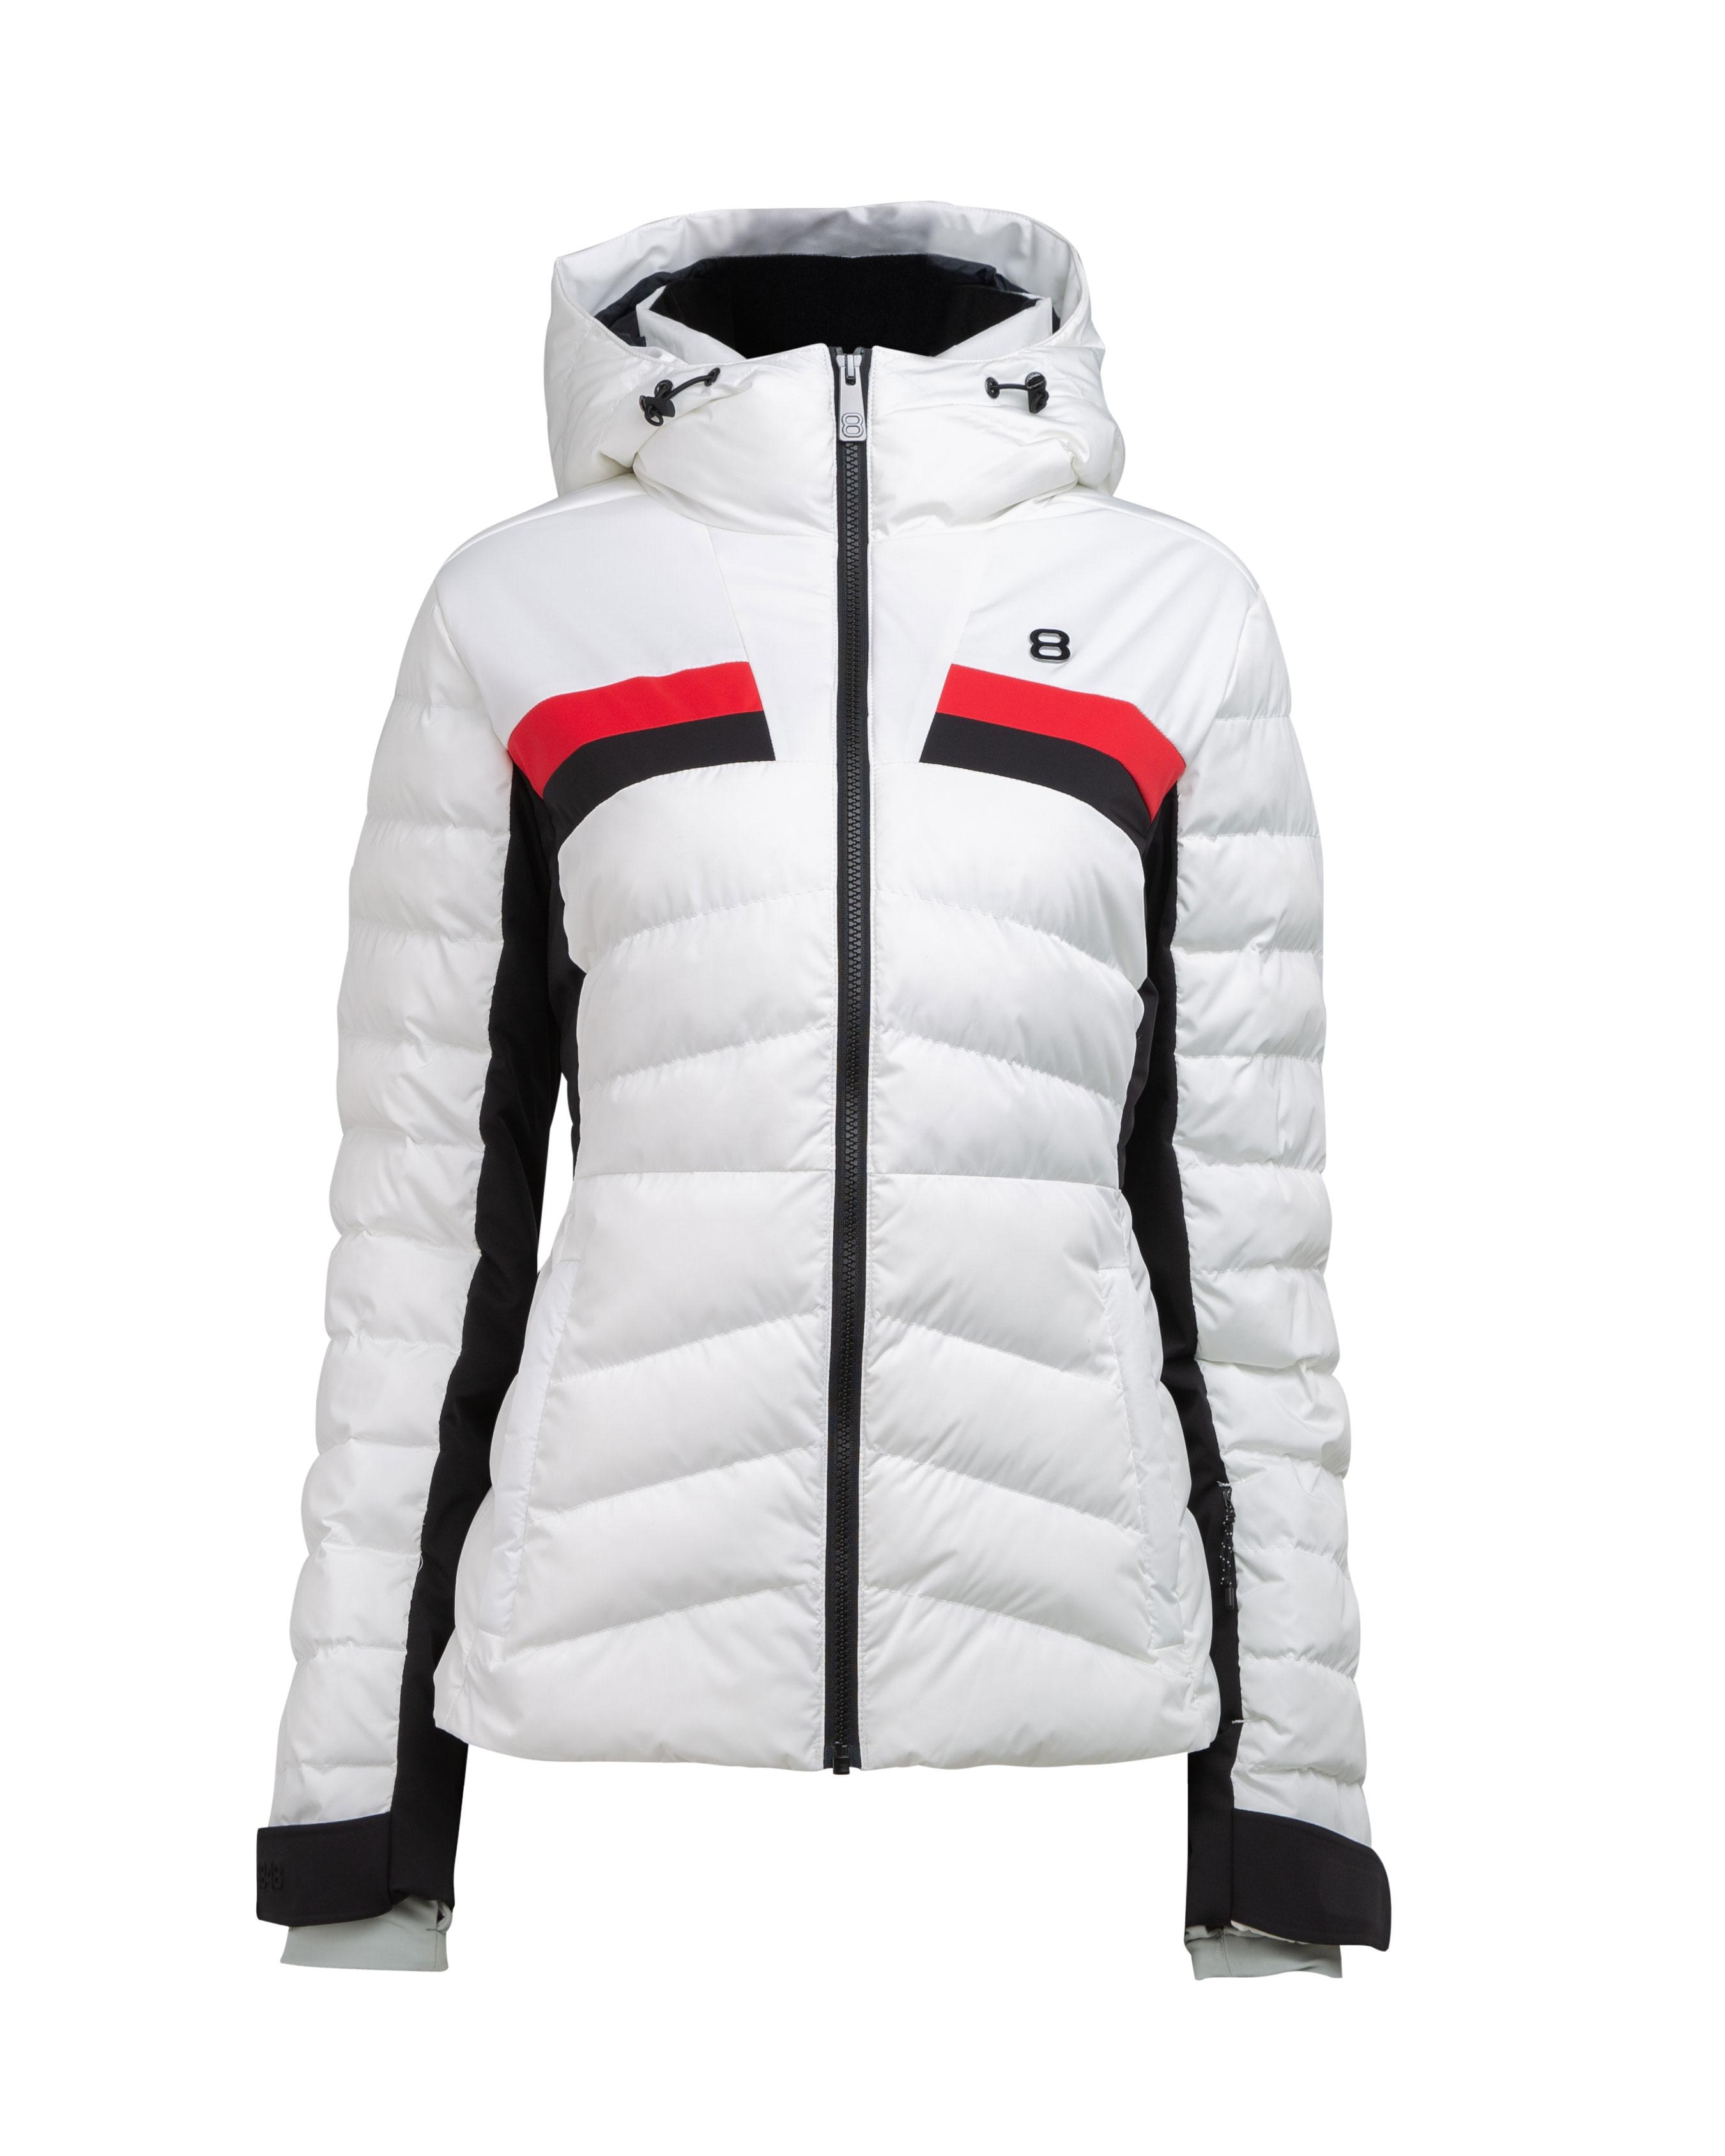 Lucia W Jacket Blanc - Weiße Ski Jacke Damen